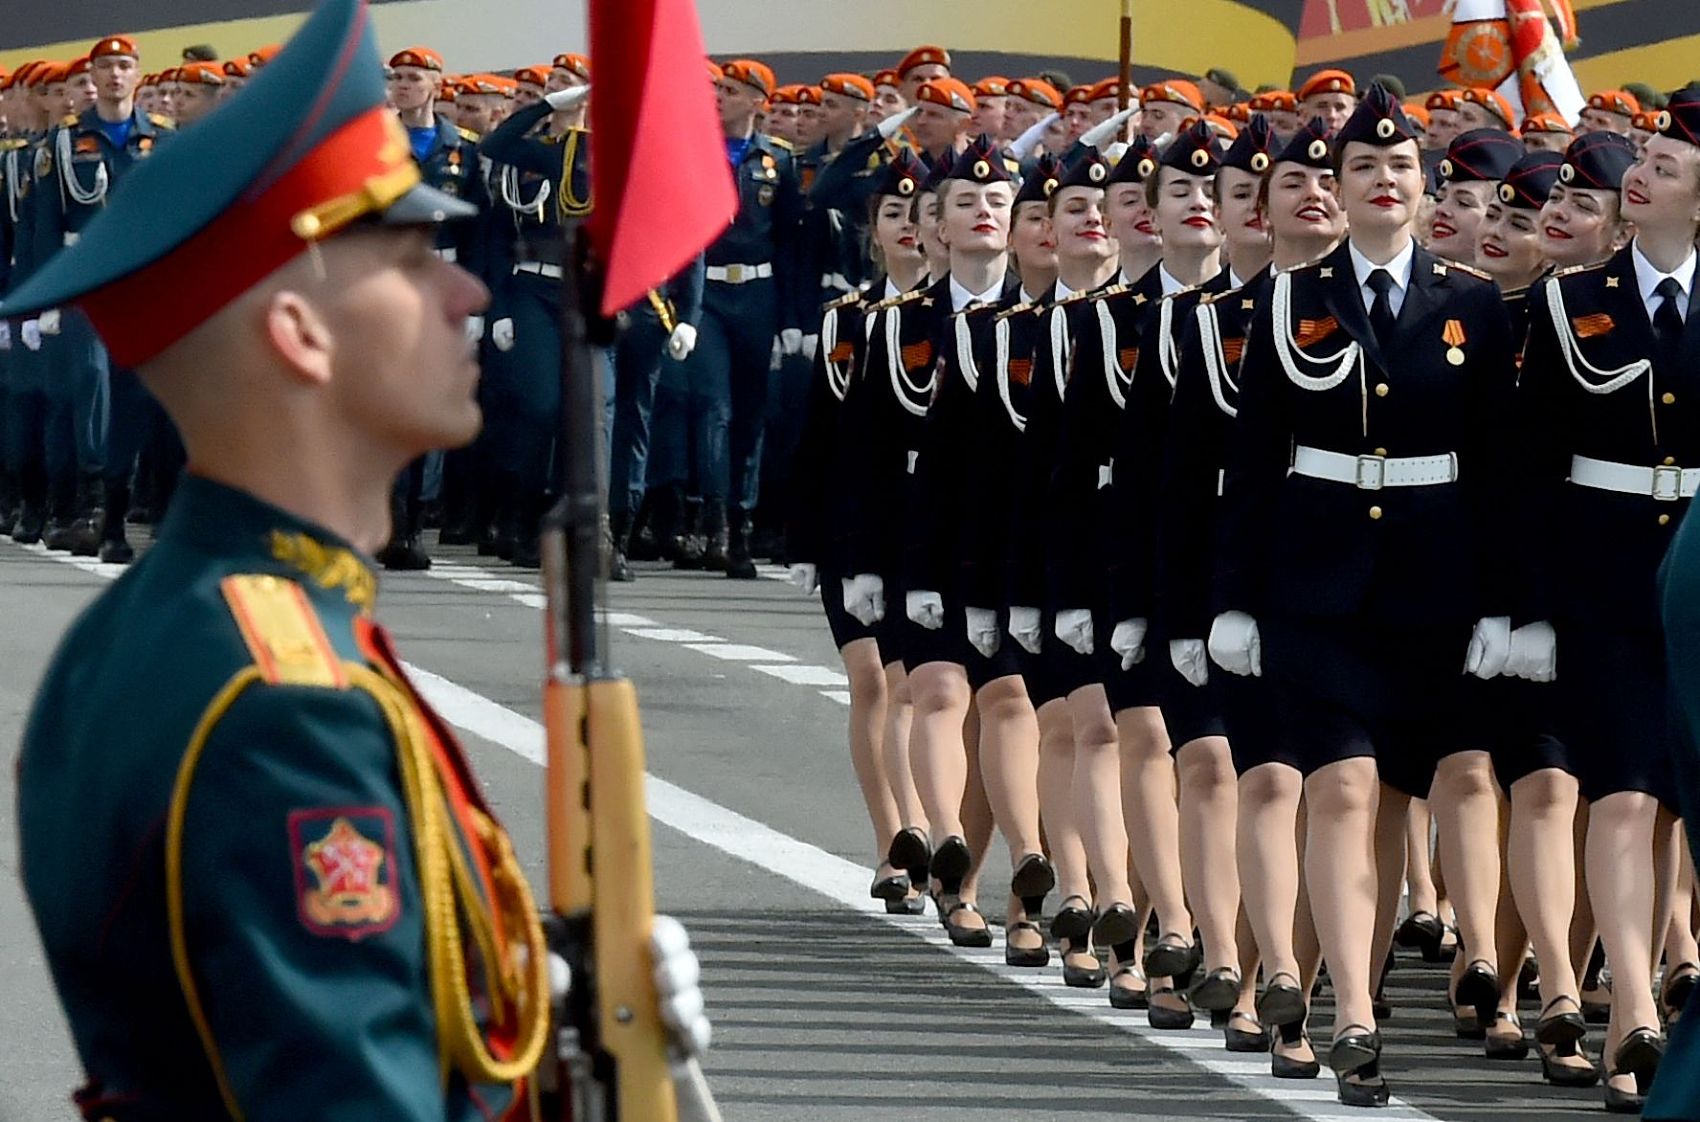 俄罗斯仪仗队女兵图片